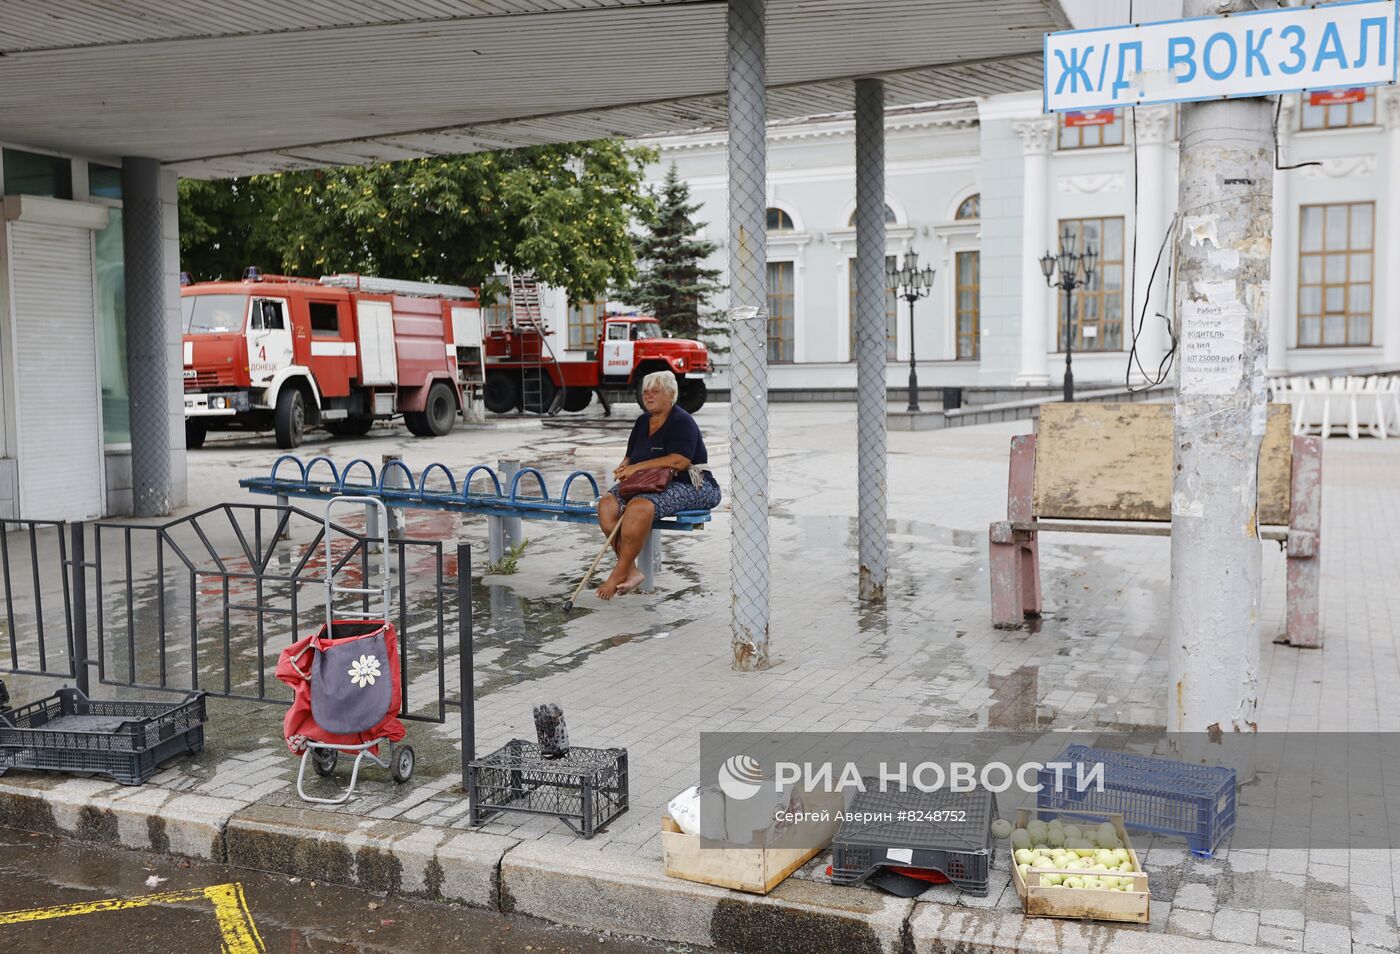 Вокзал в Донецке горит после обстрела ВСУ